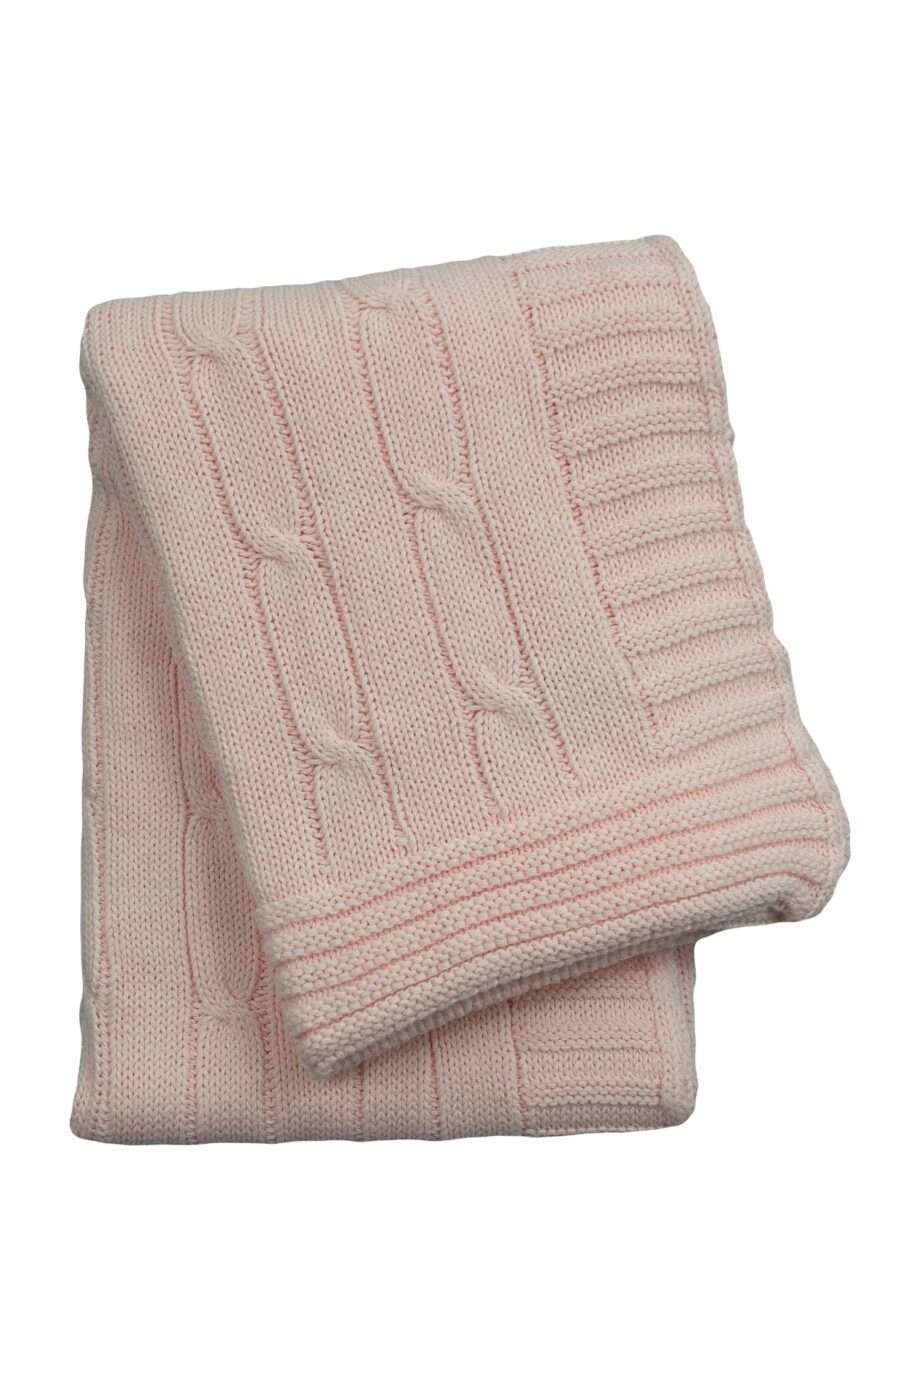 twist baby pink knitted cotton little blanket medium